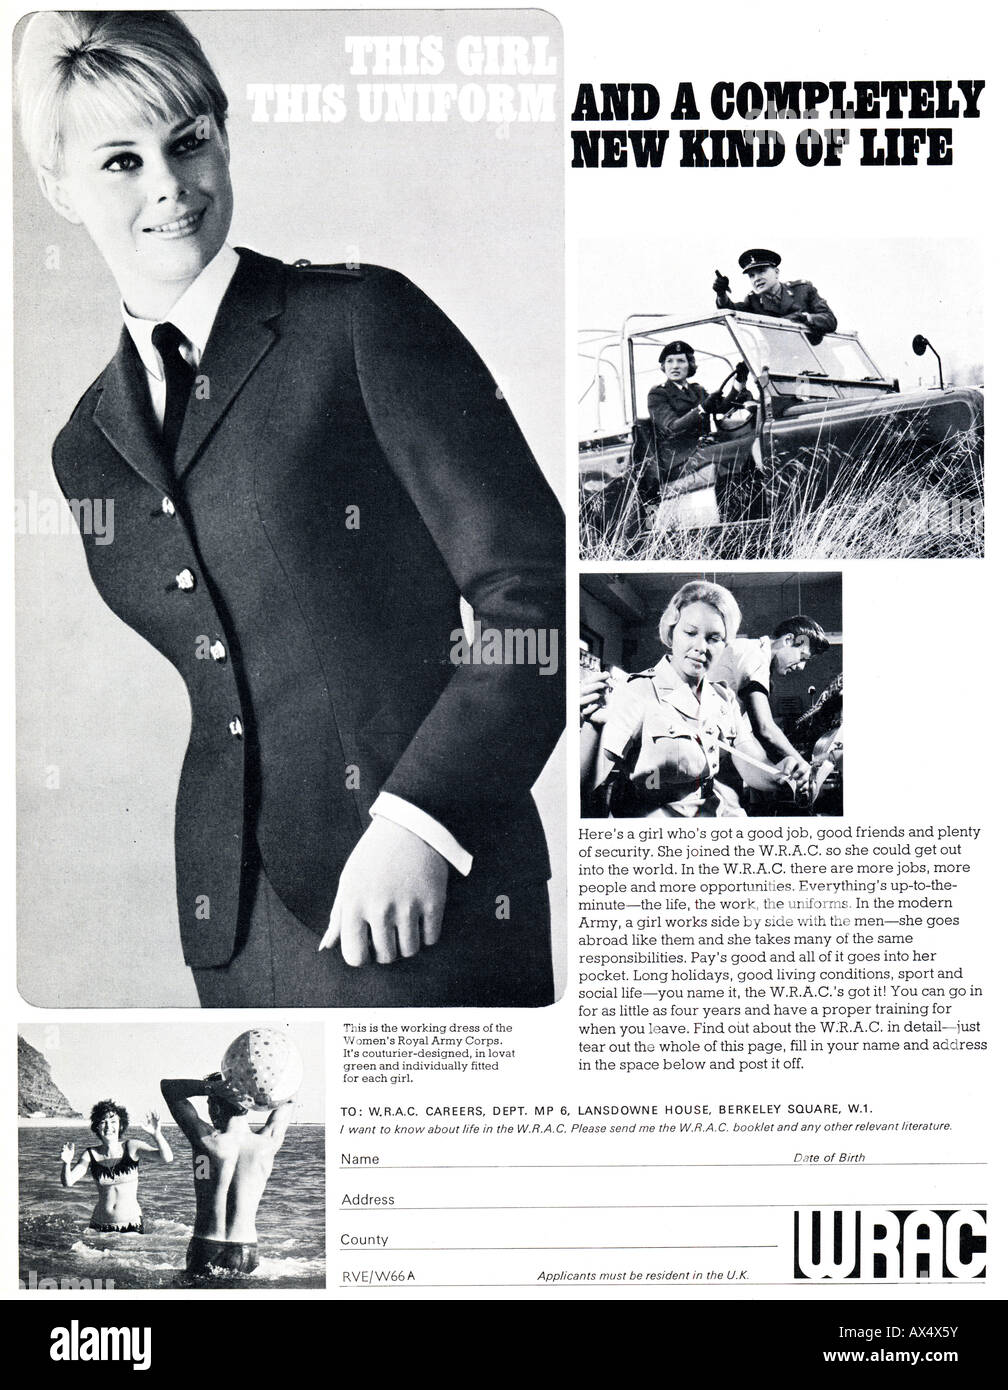 1960er Jahre sechziger Jahre Werbung für WRAC Frauen Royal Army Corps 1965 für nur zur redaktionellen Nutzung Stockfoto